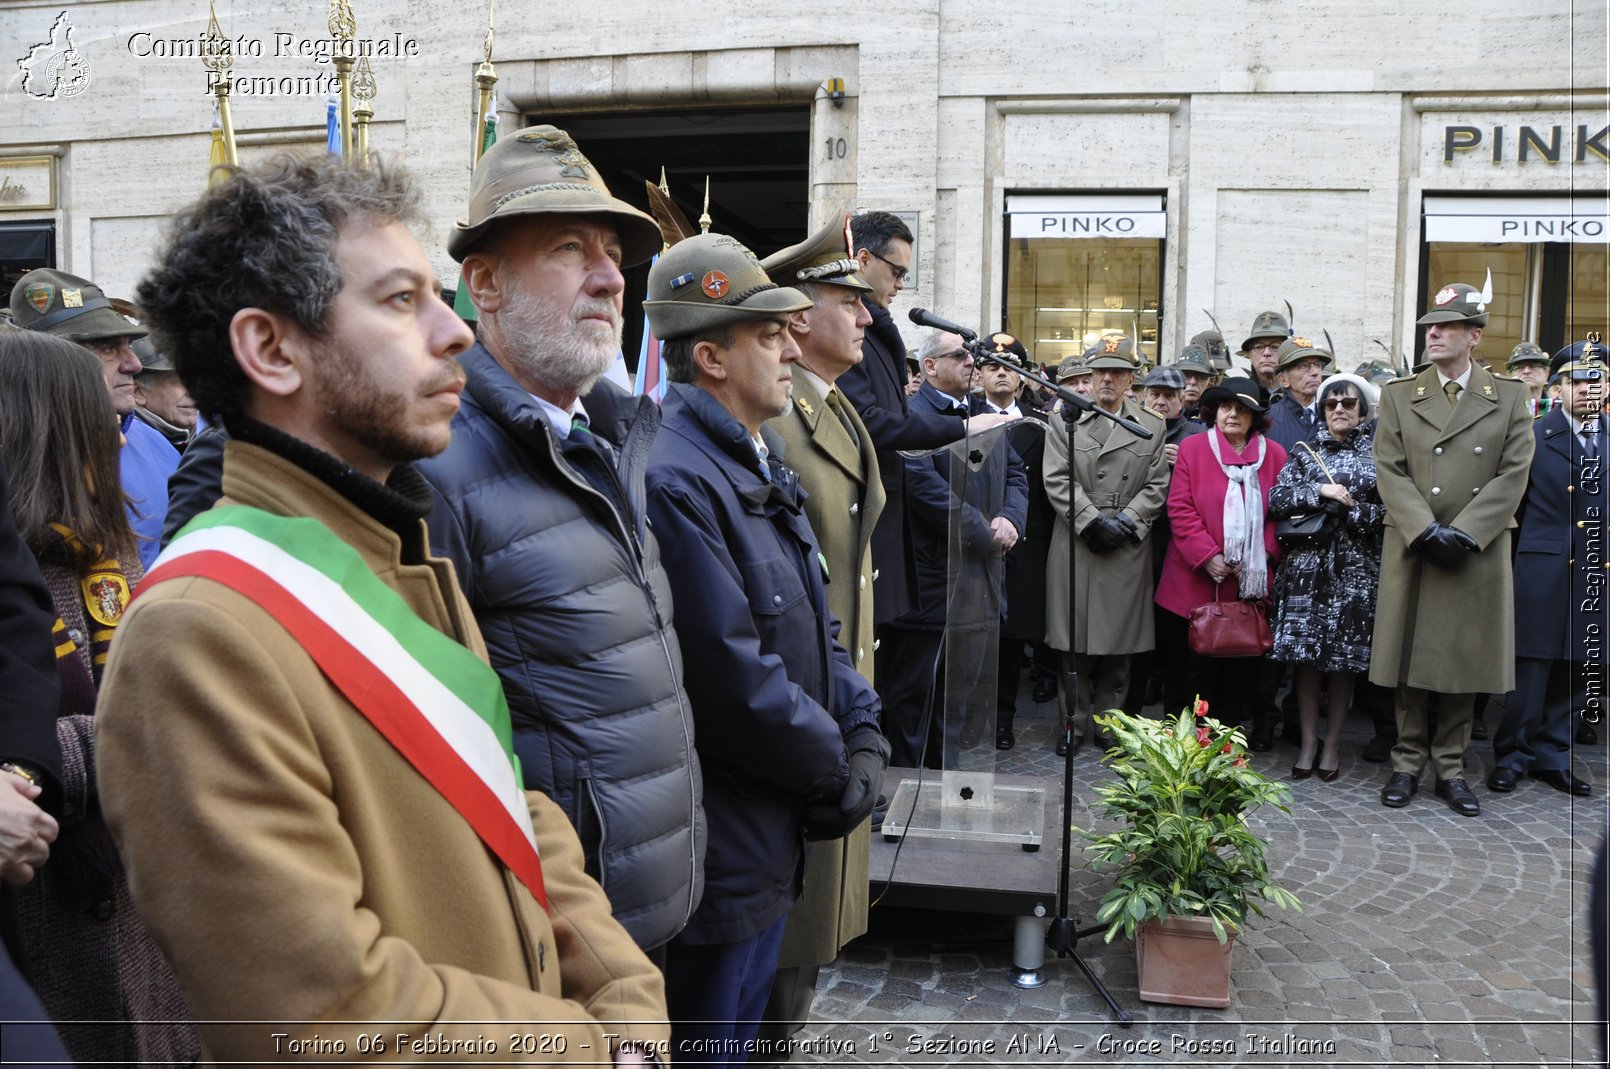 Torino 6 Febbraio 2020 - Targa commemorativa 1 Sezione ANA - Croce Rossa Italiana